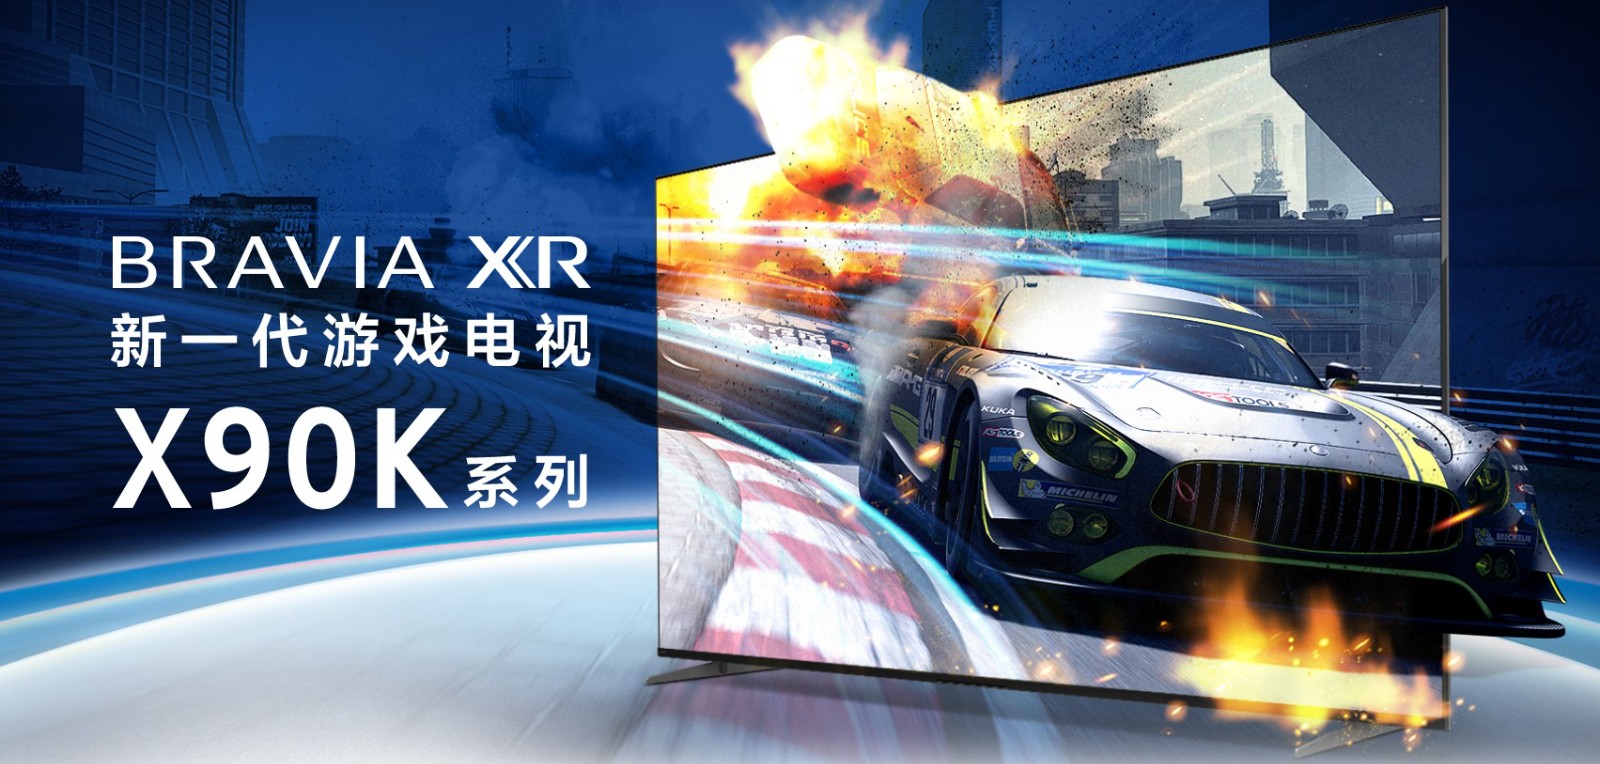 索僧新1代游戏电视X90K系列上家天猫 6999起